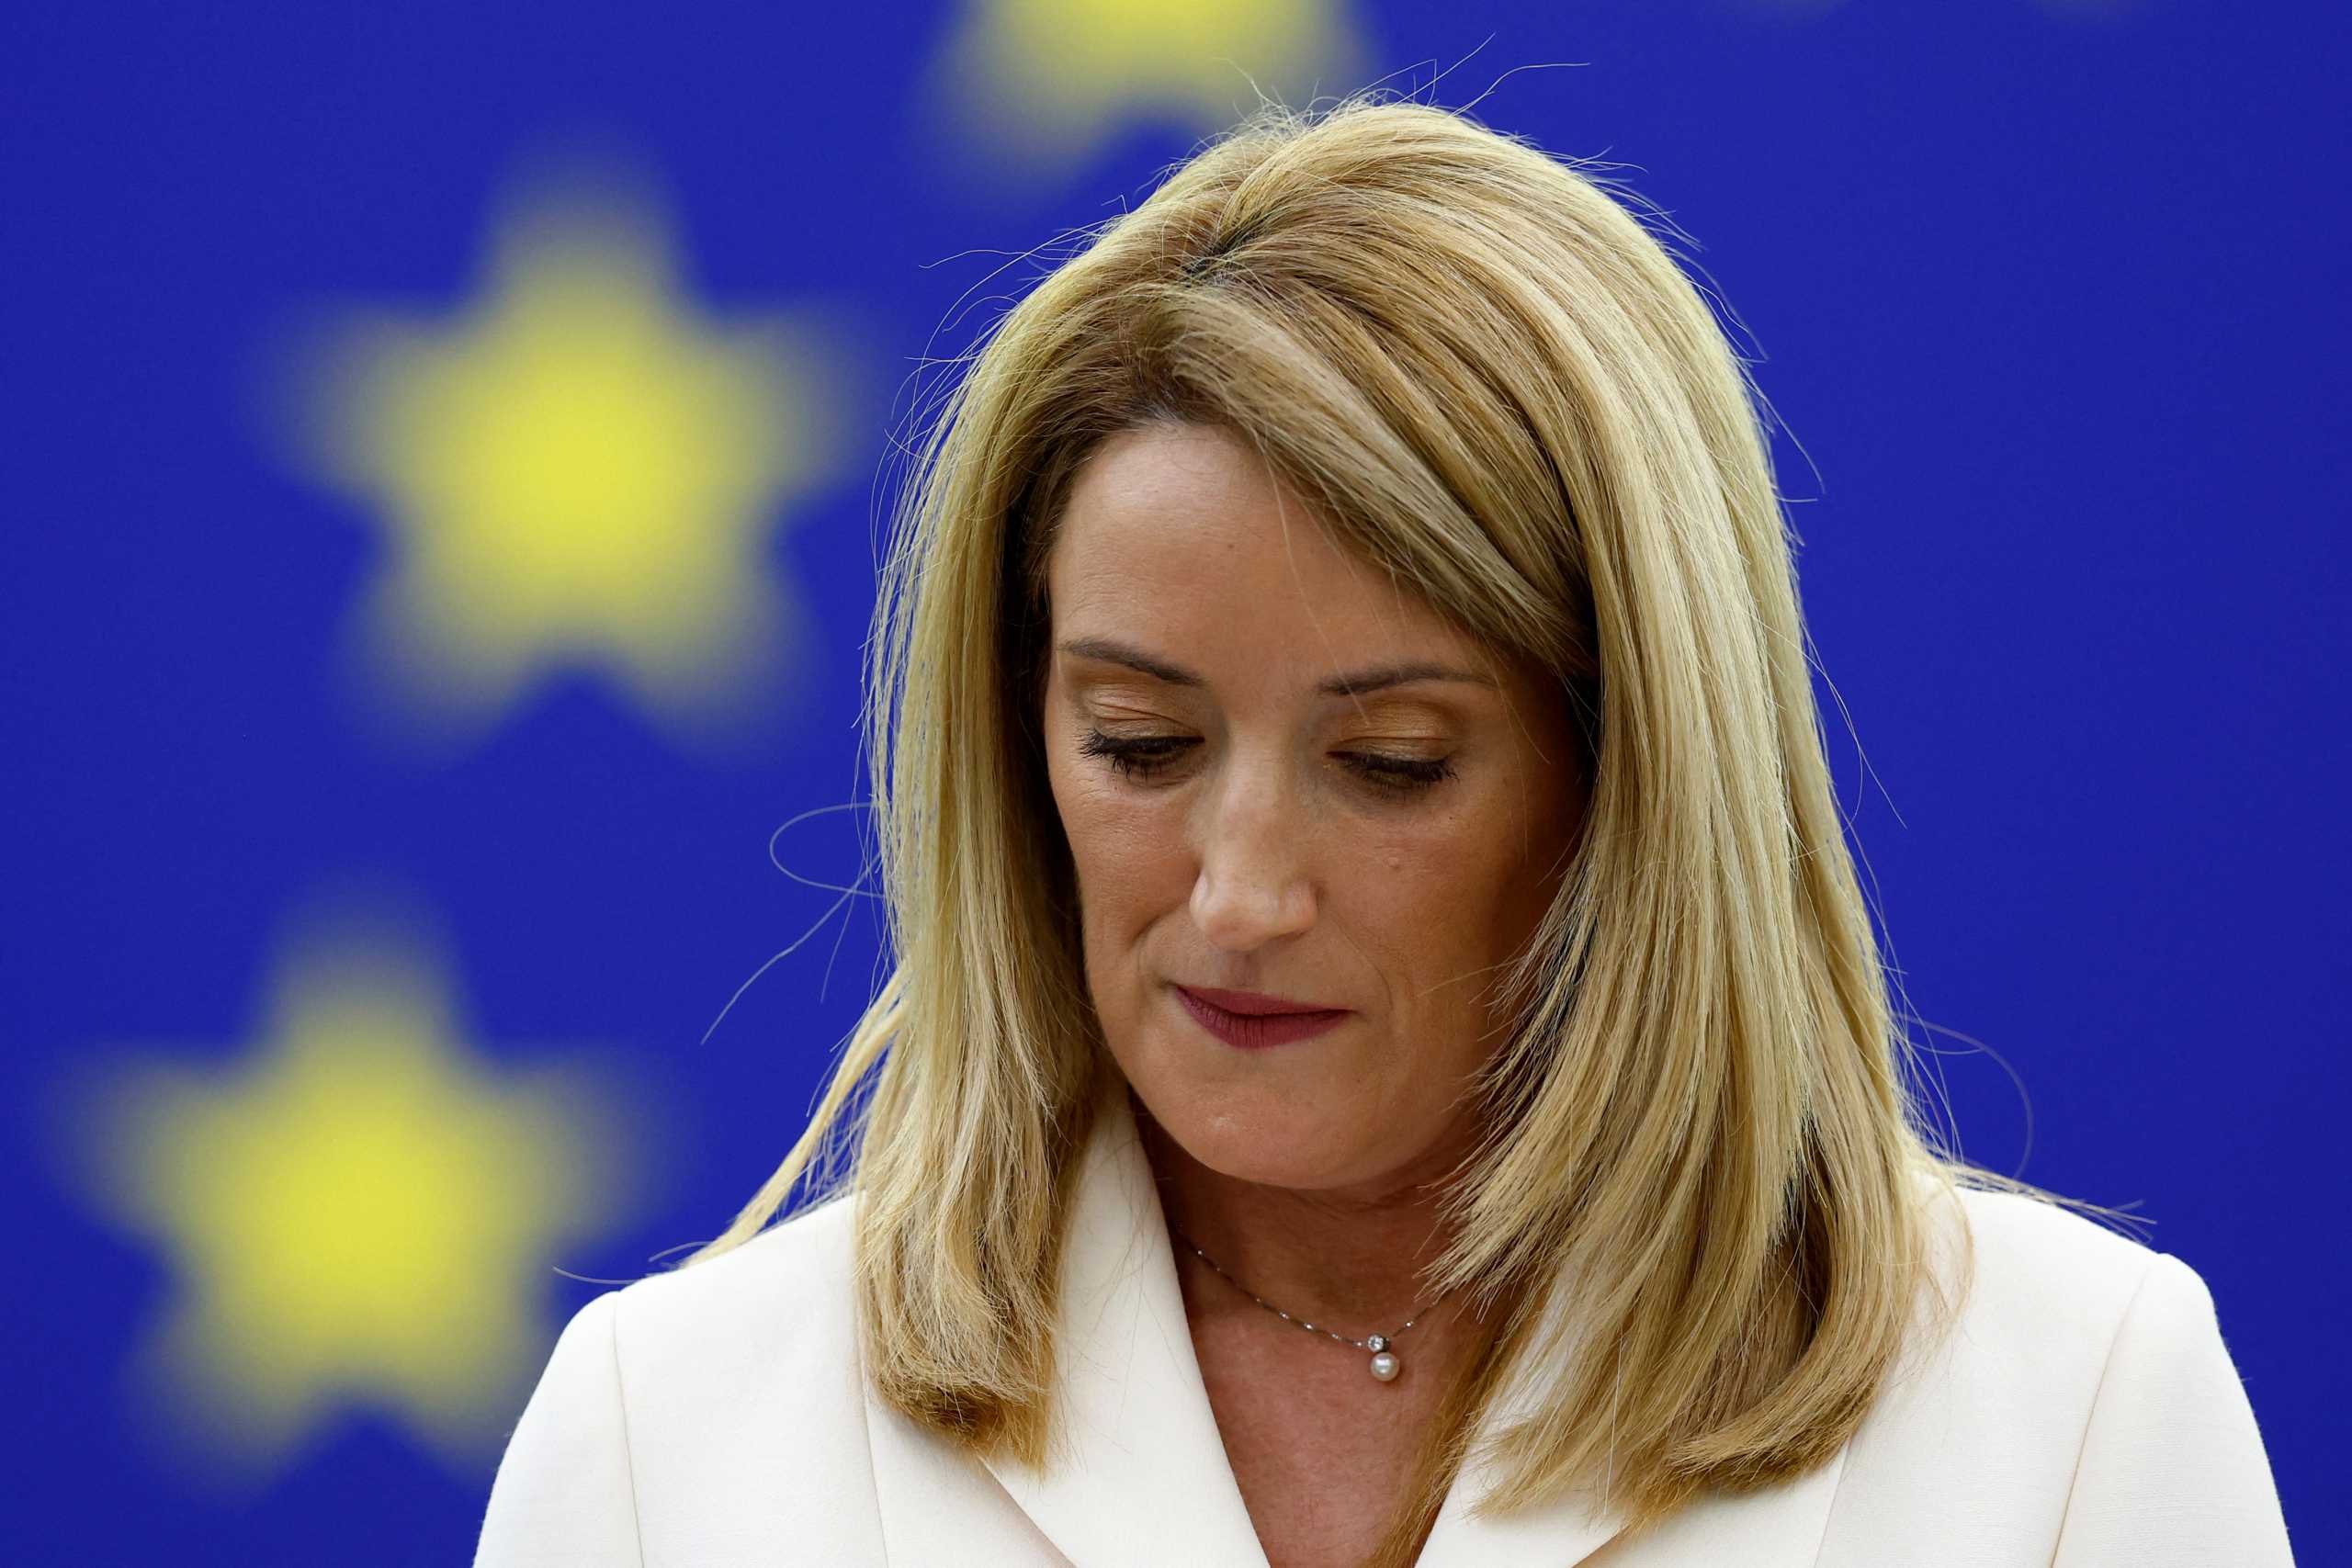 ΝΔ: Ο ΣΥΡΙΖΑ διαστρεβλώνει το περιεχόμενο της απάντησης της προέδρου του Ευρωπαϊκού Κοινοβουλίου